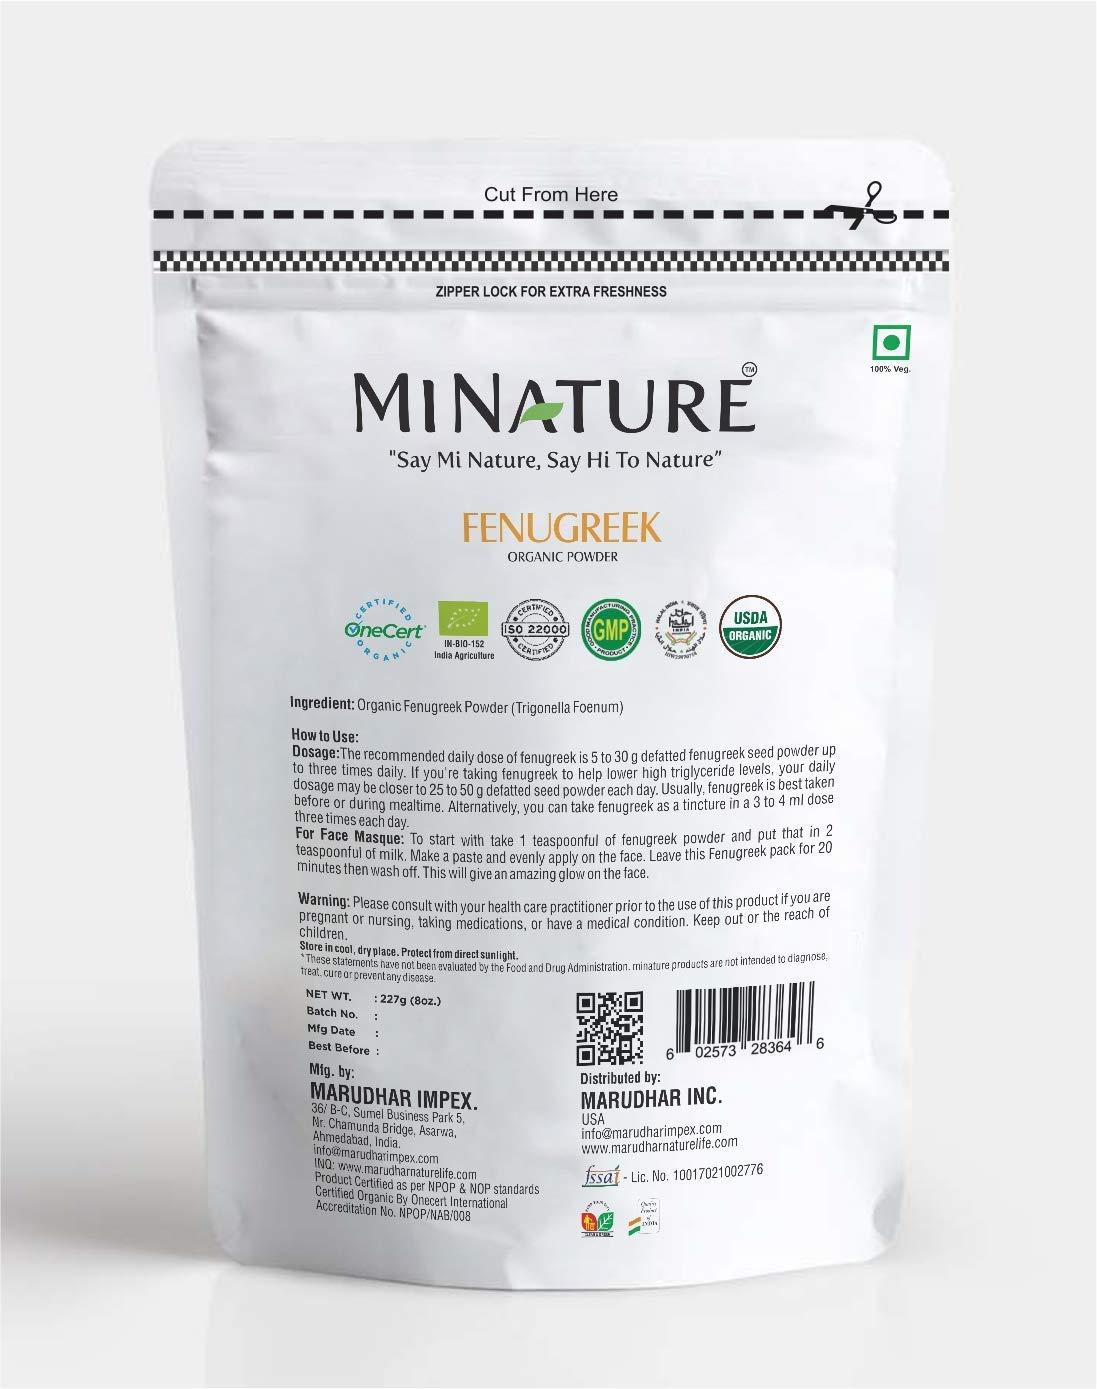 100% Natural Indigo Powder Organically Grown 227g / 1/2 lb / 8 Ounces